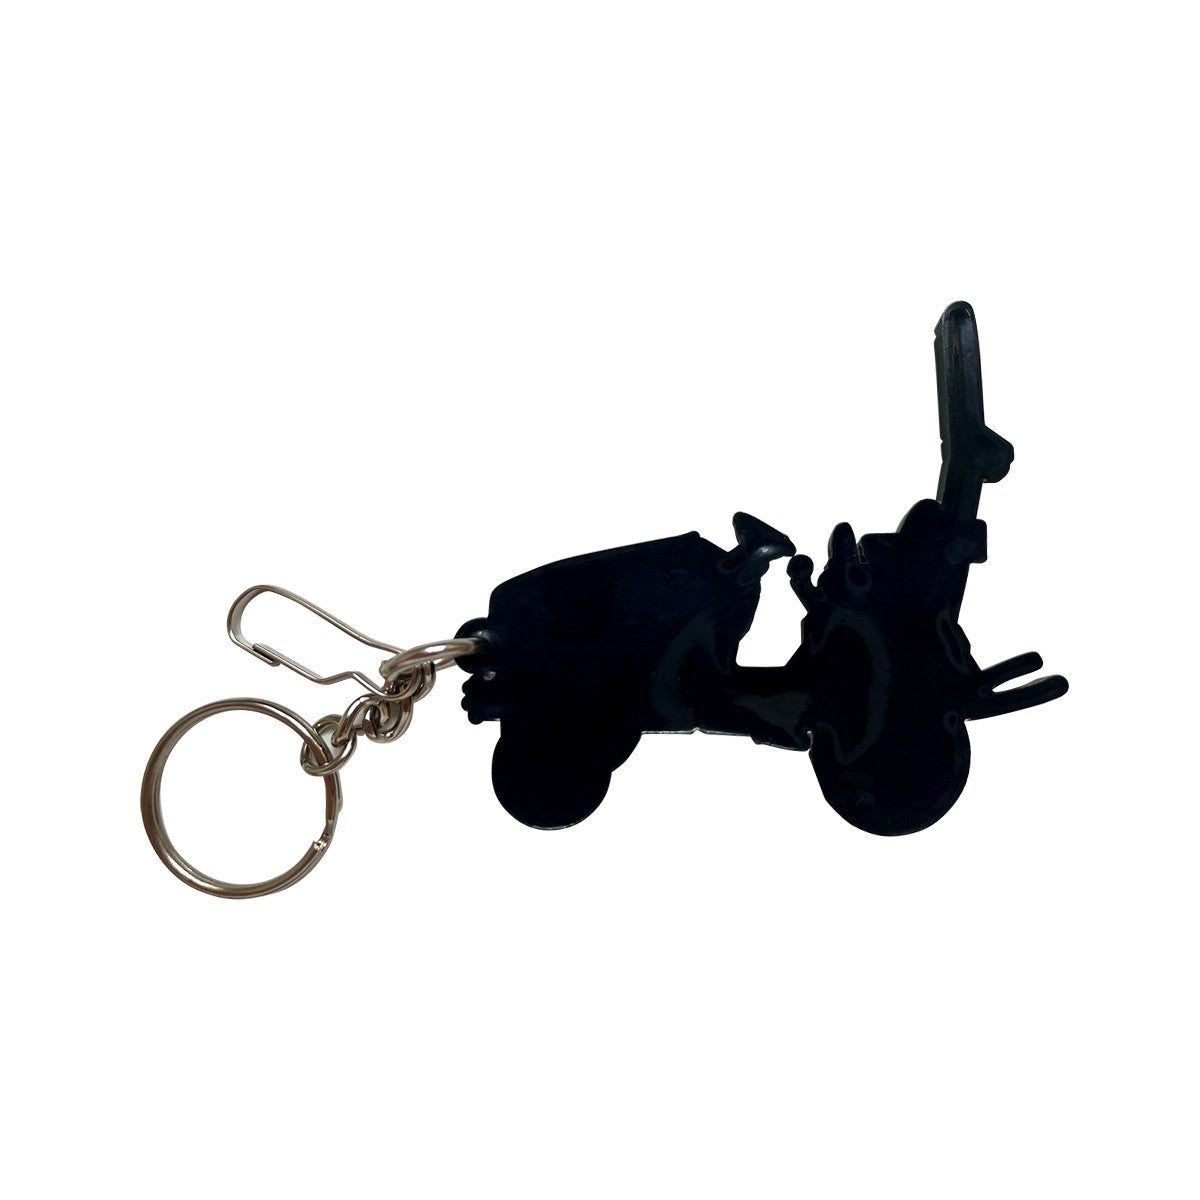 John Deere 1 Series Tractor Keychain